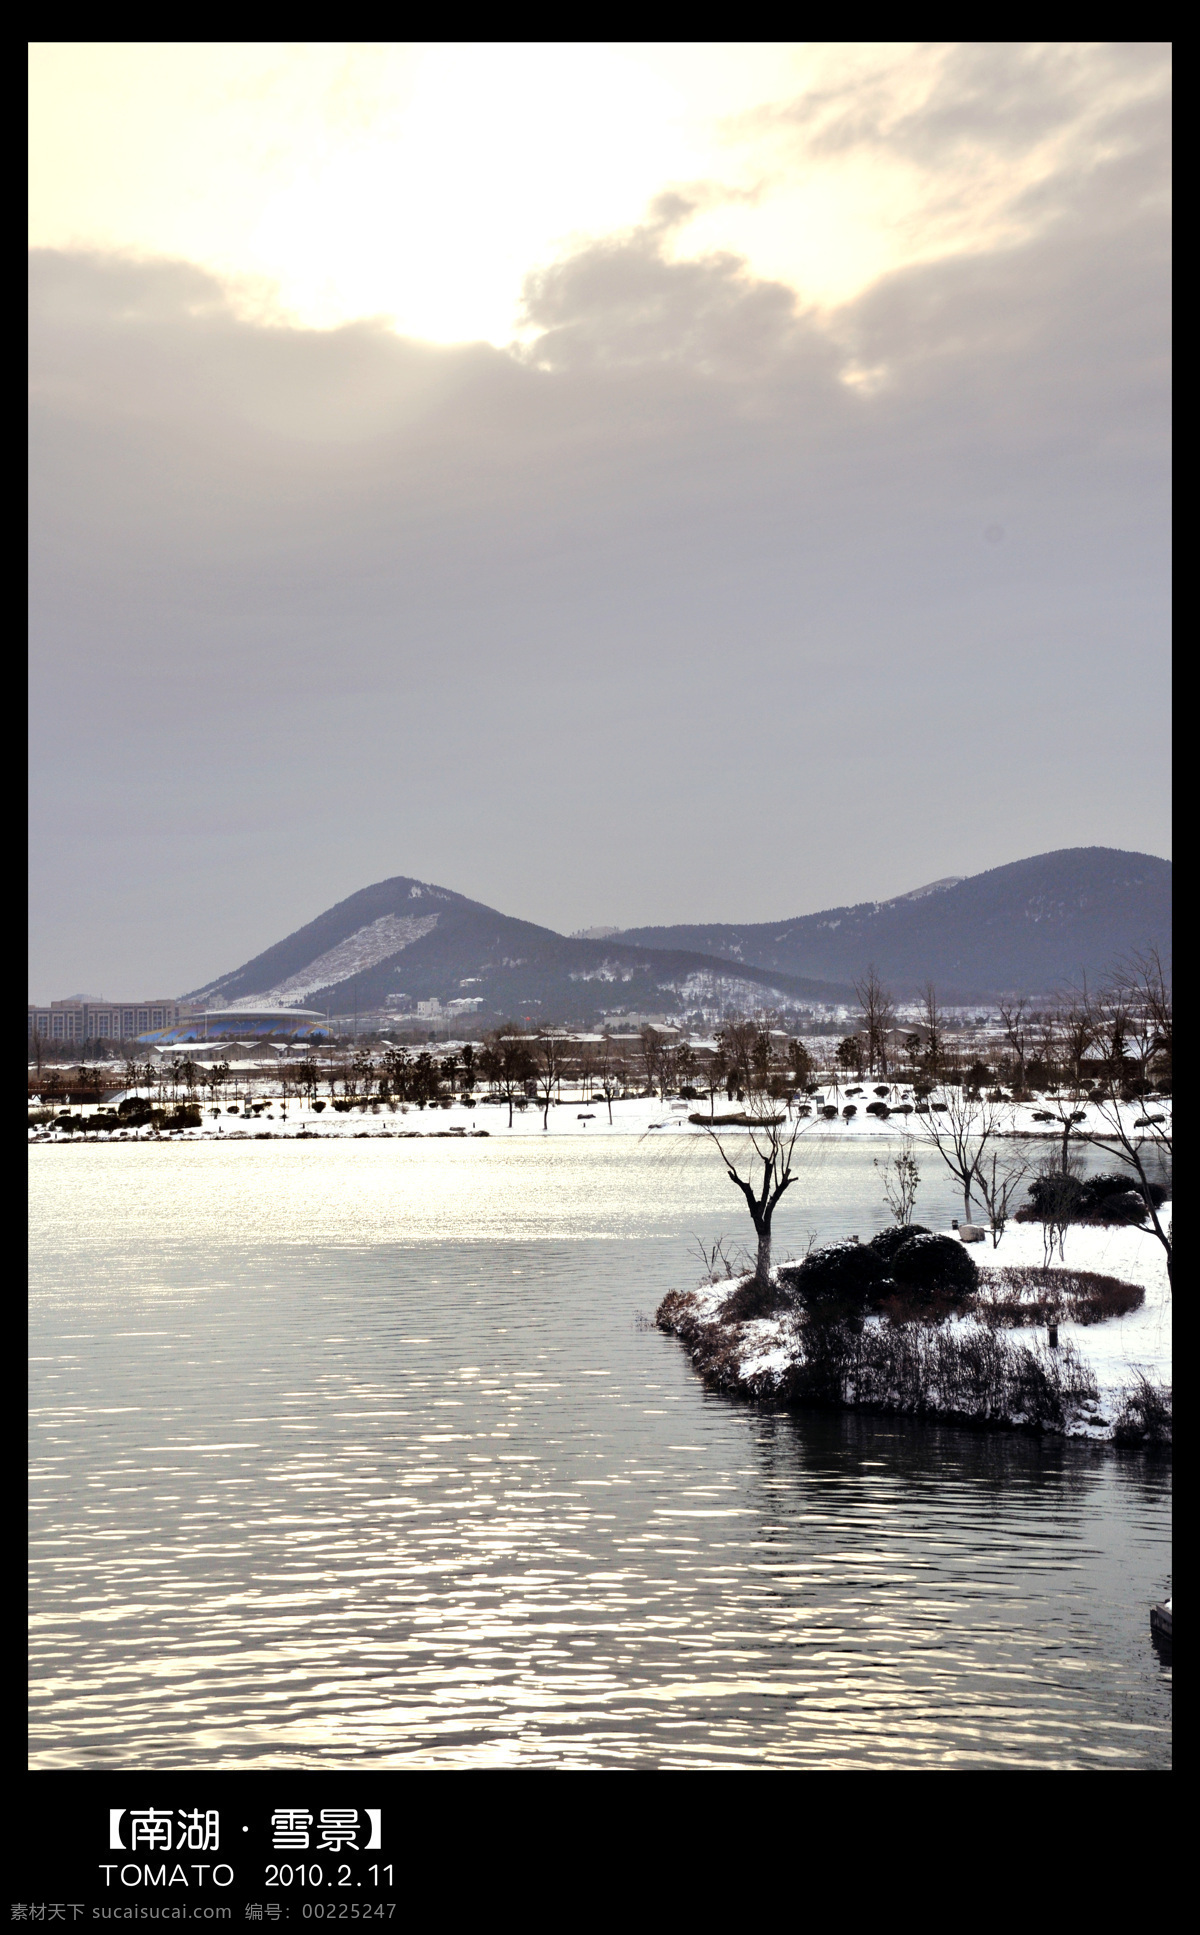 徐州 云龙湖 雪景 湖水 雪 冬季 山水 山 水 枯草 天空 美好 夕阳 风景摄影 山水风景 自然景观